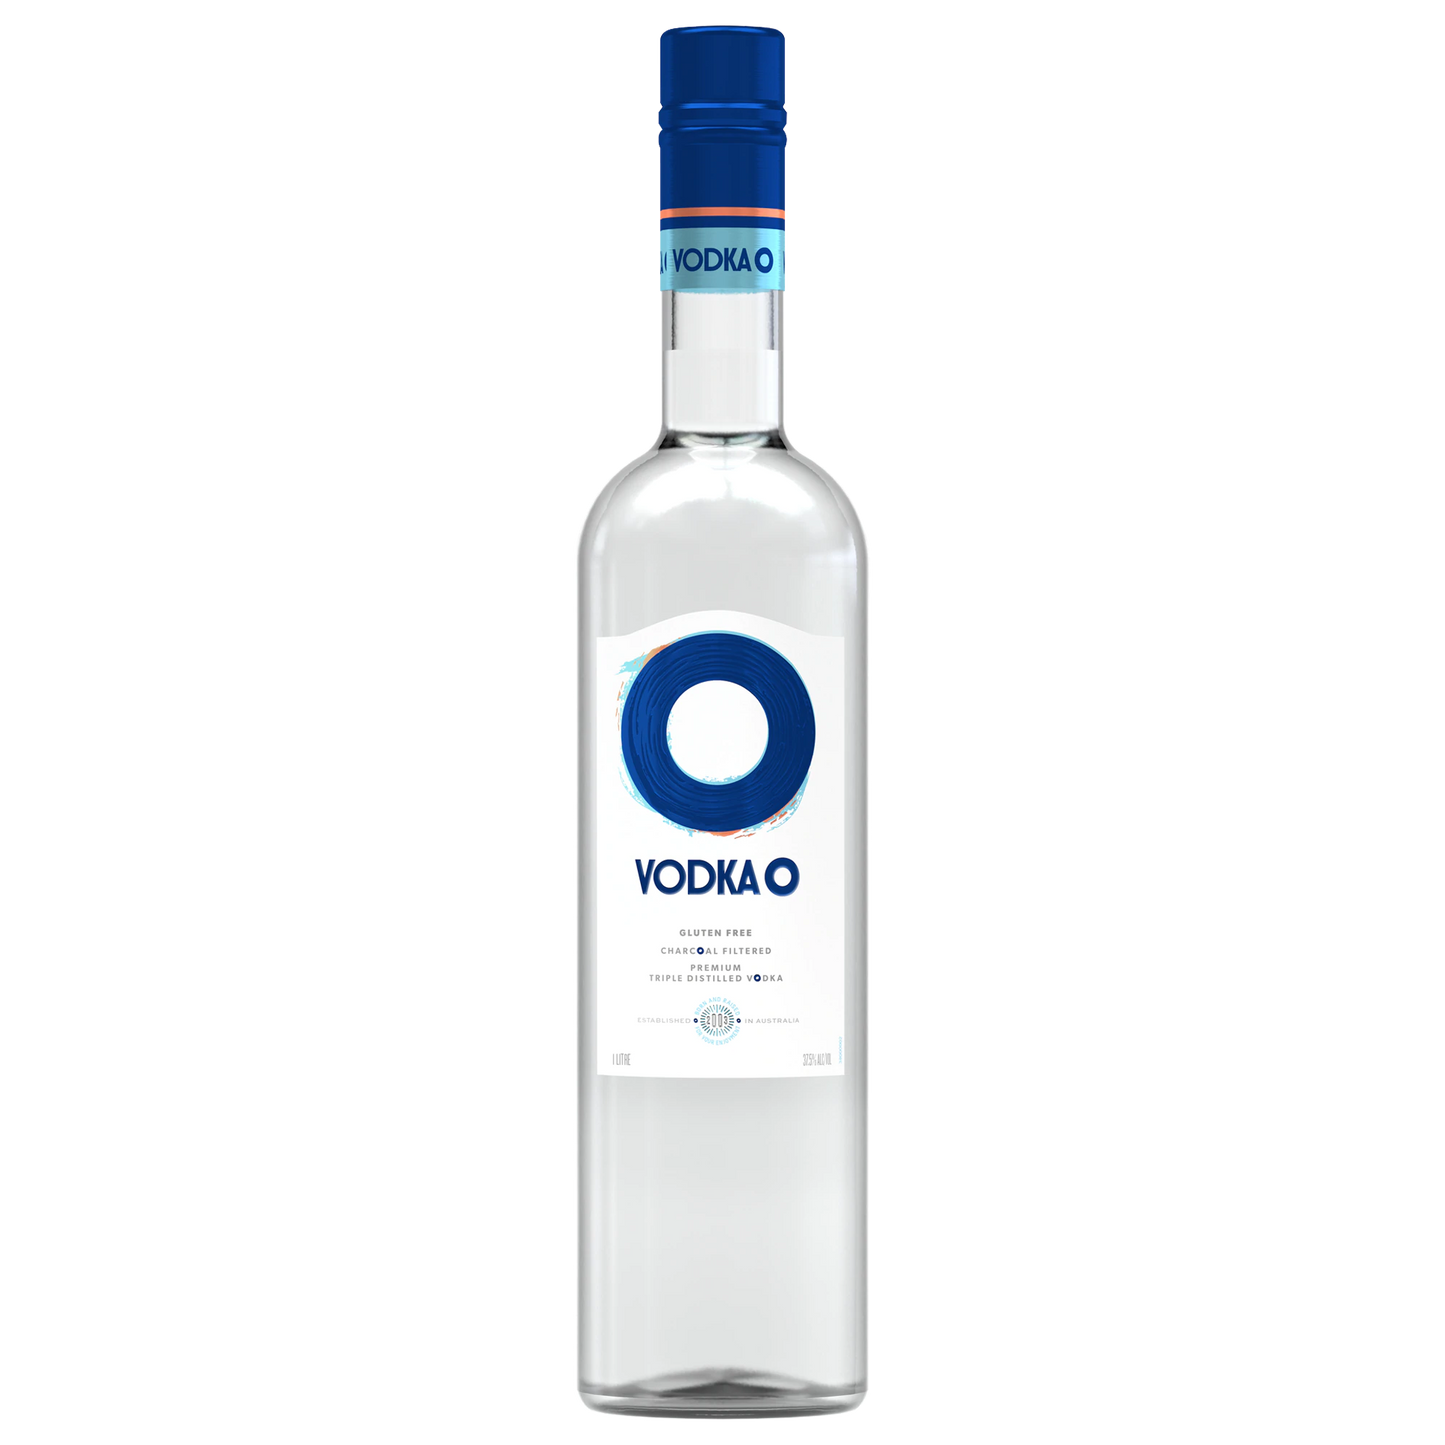 Vodka O Vodka 1L